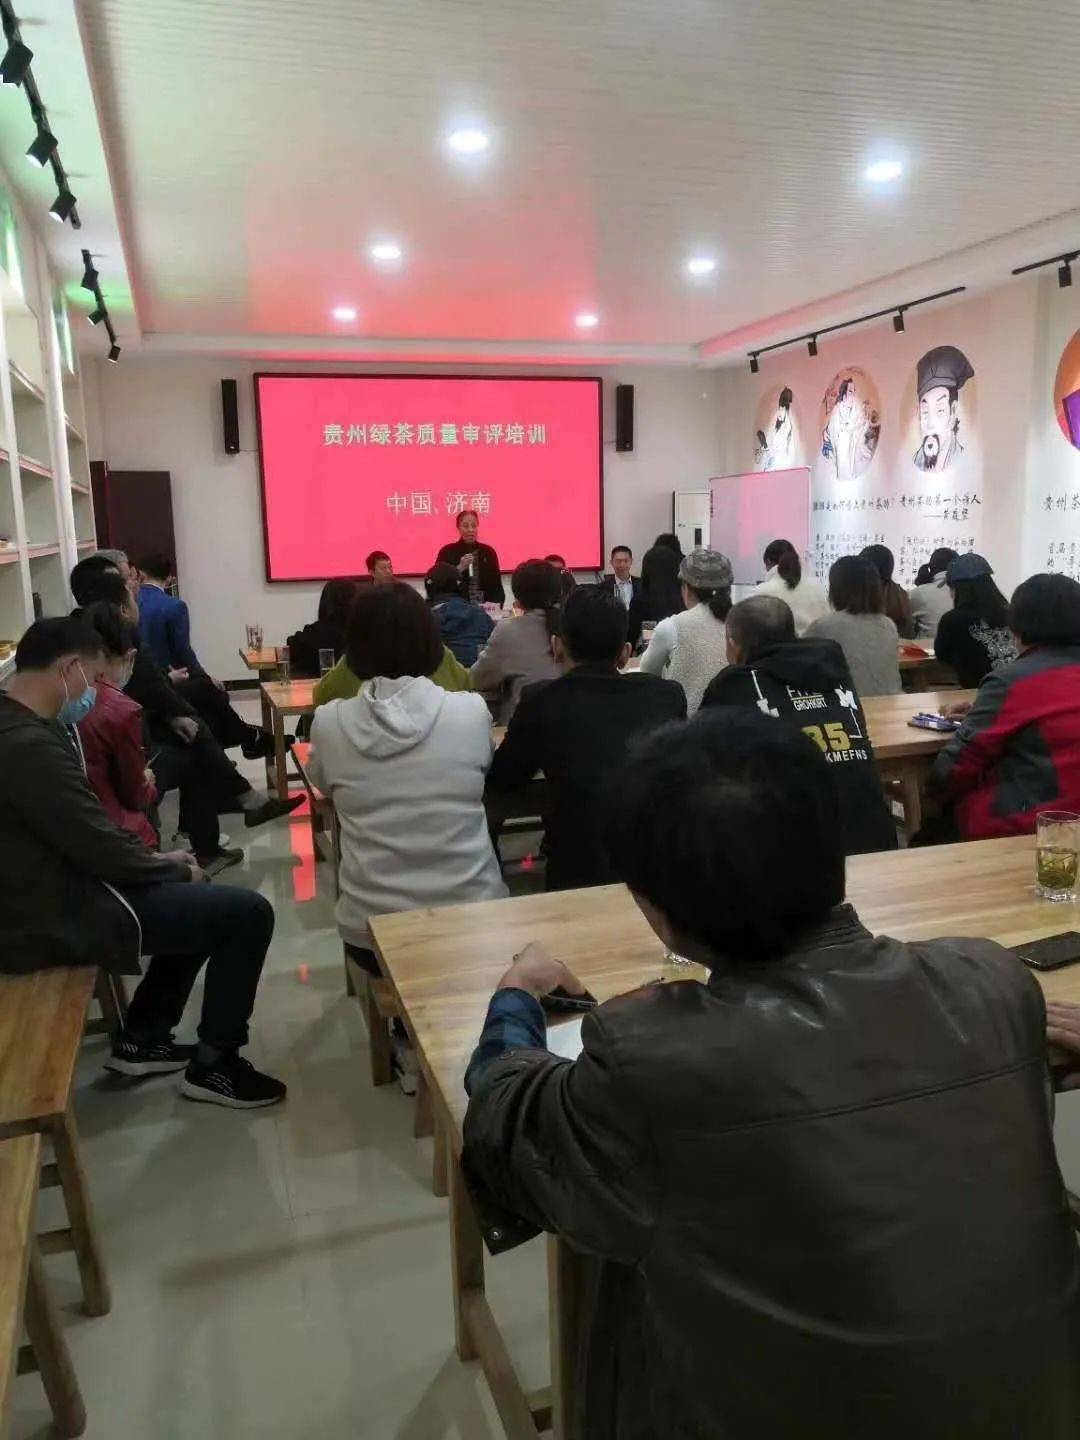 凯时登录首页|*
贵州绿茶品牌生长促进会山东分会会员销售培训举行